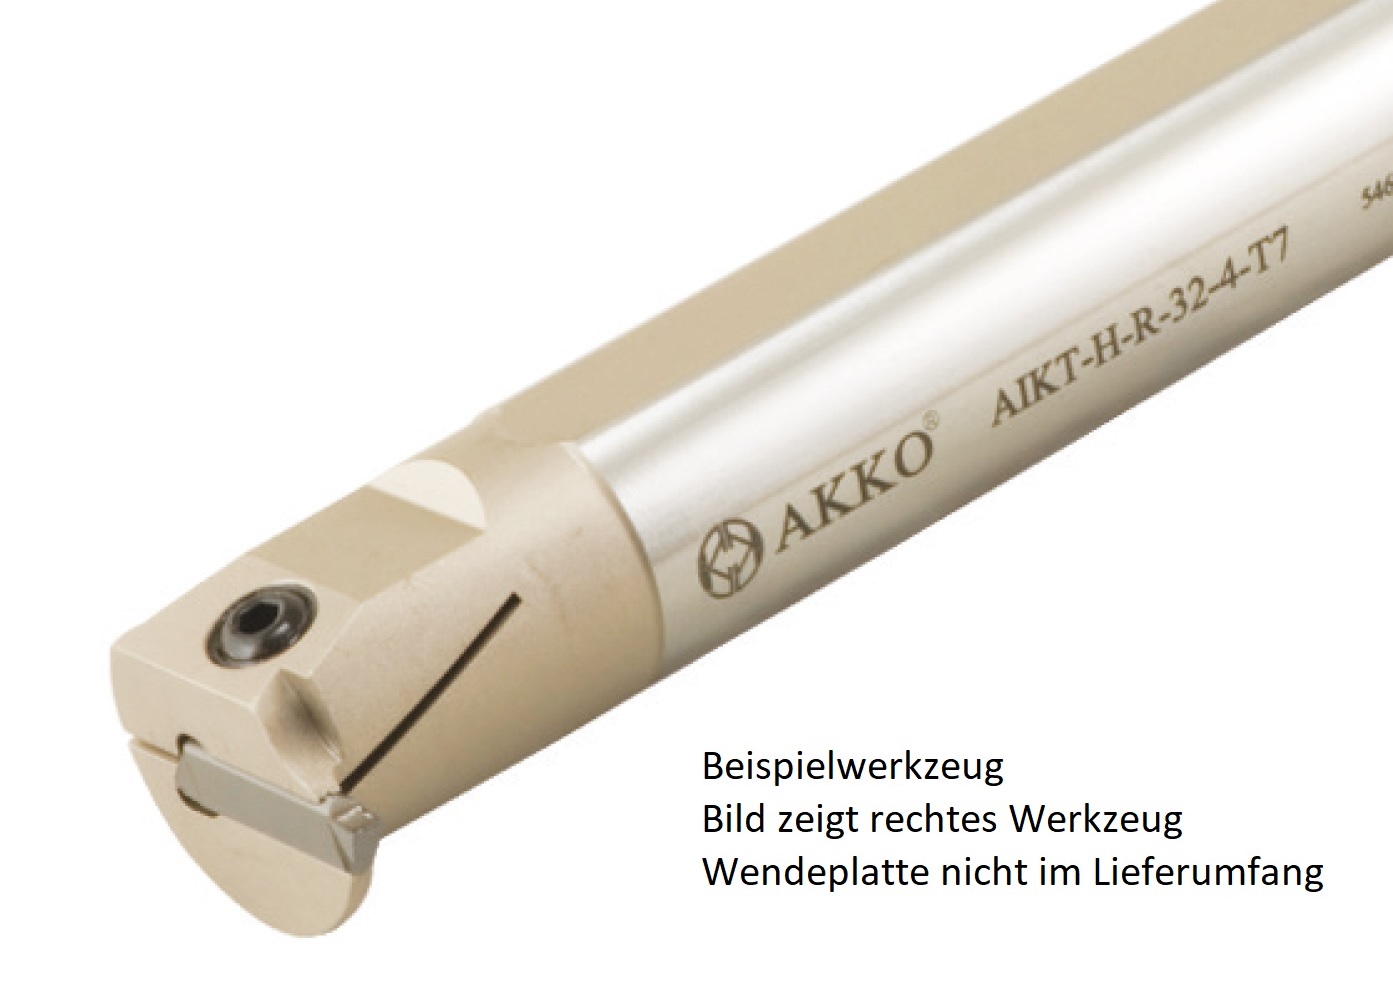 AKKO-Innen-Stechhalter, kompatibel mit Horn-Stechplatte S229-3
Schaft-ø 40, ohne Innenkühlung, links